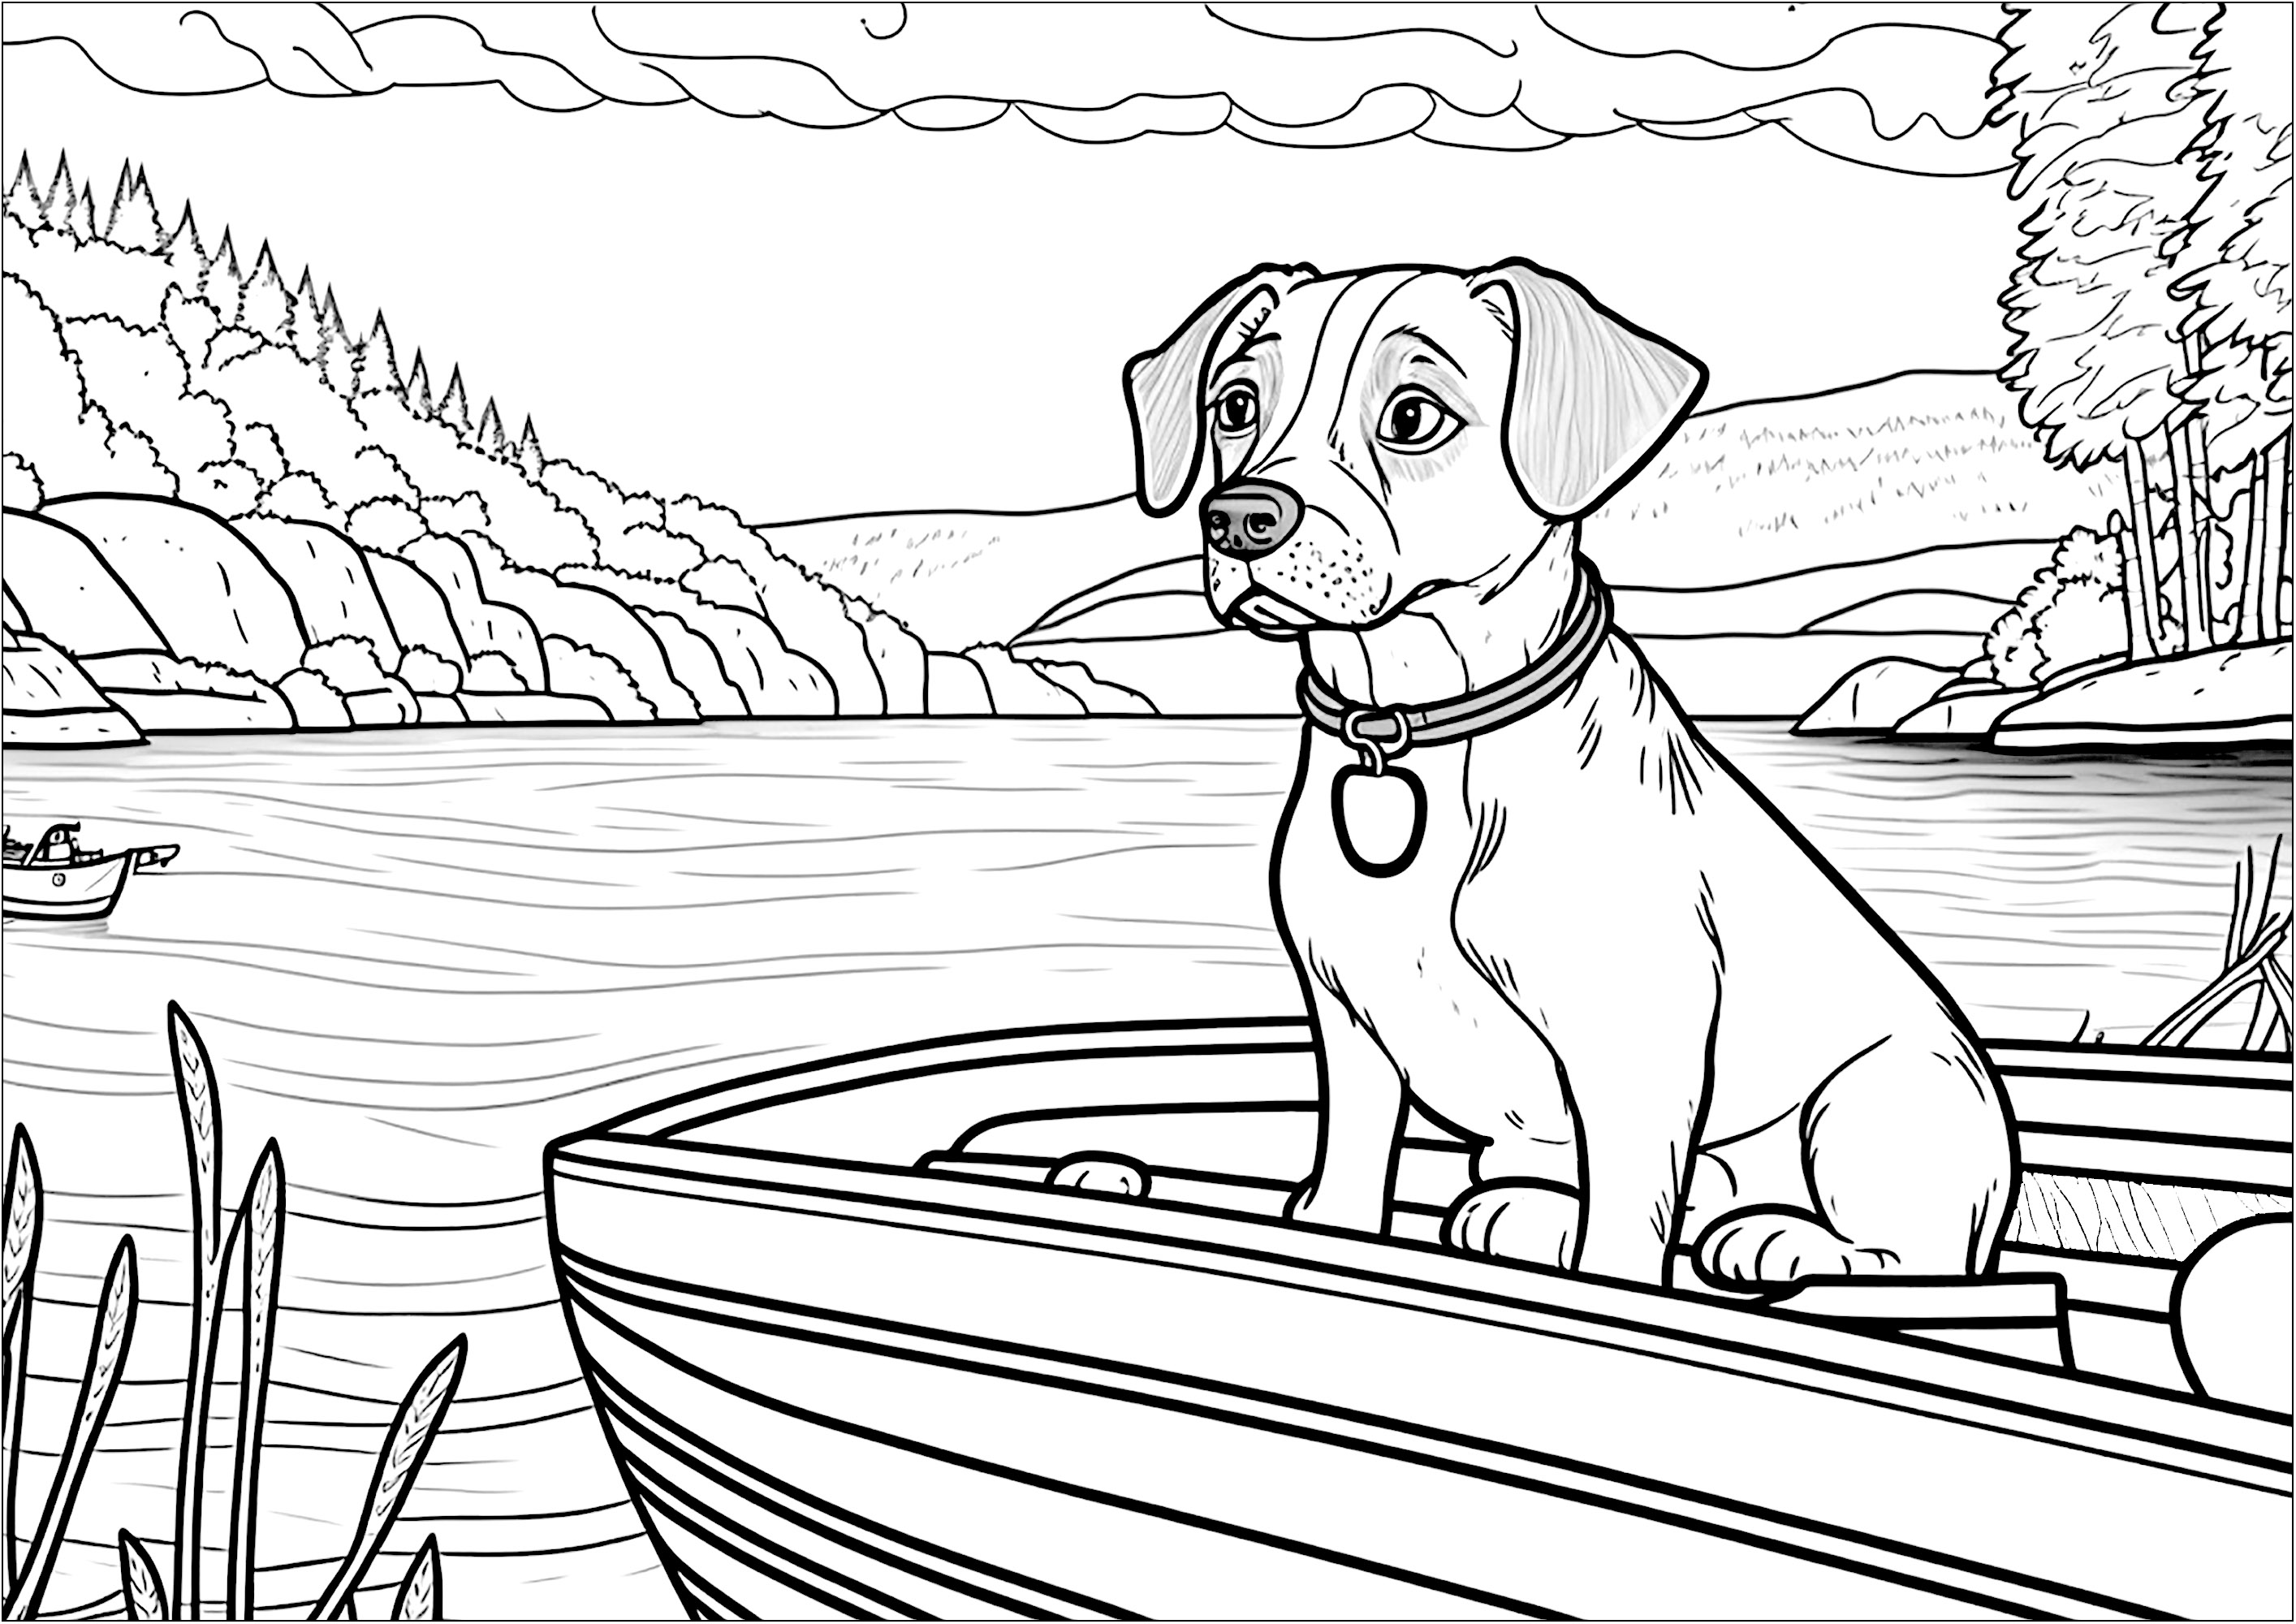 Chien sur un bateau. Ce coloriage montre un chien sur un bateau, qui navigue sur un lac.Le paysage d'arrière-plan est magnifique : montagne, forêts ...